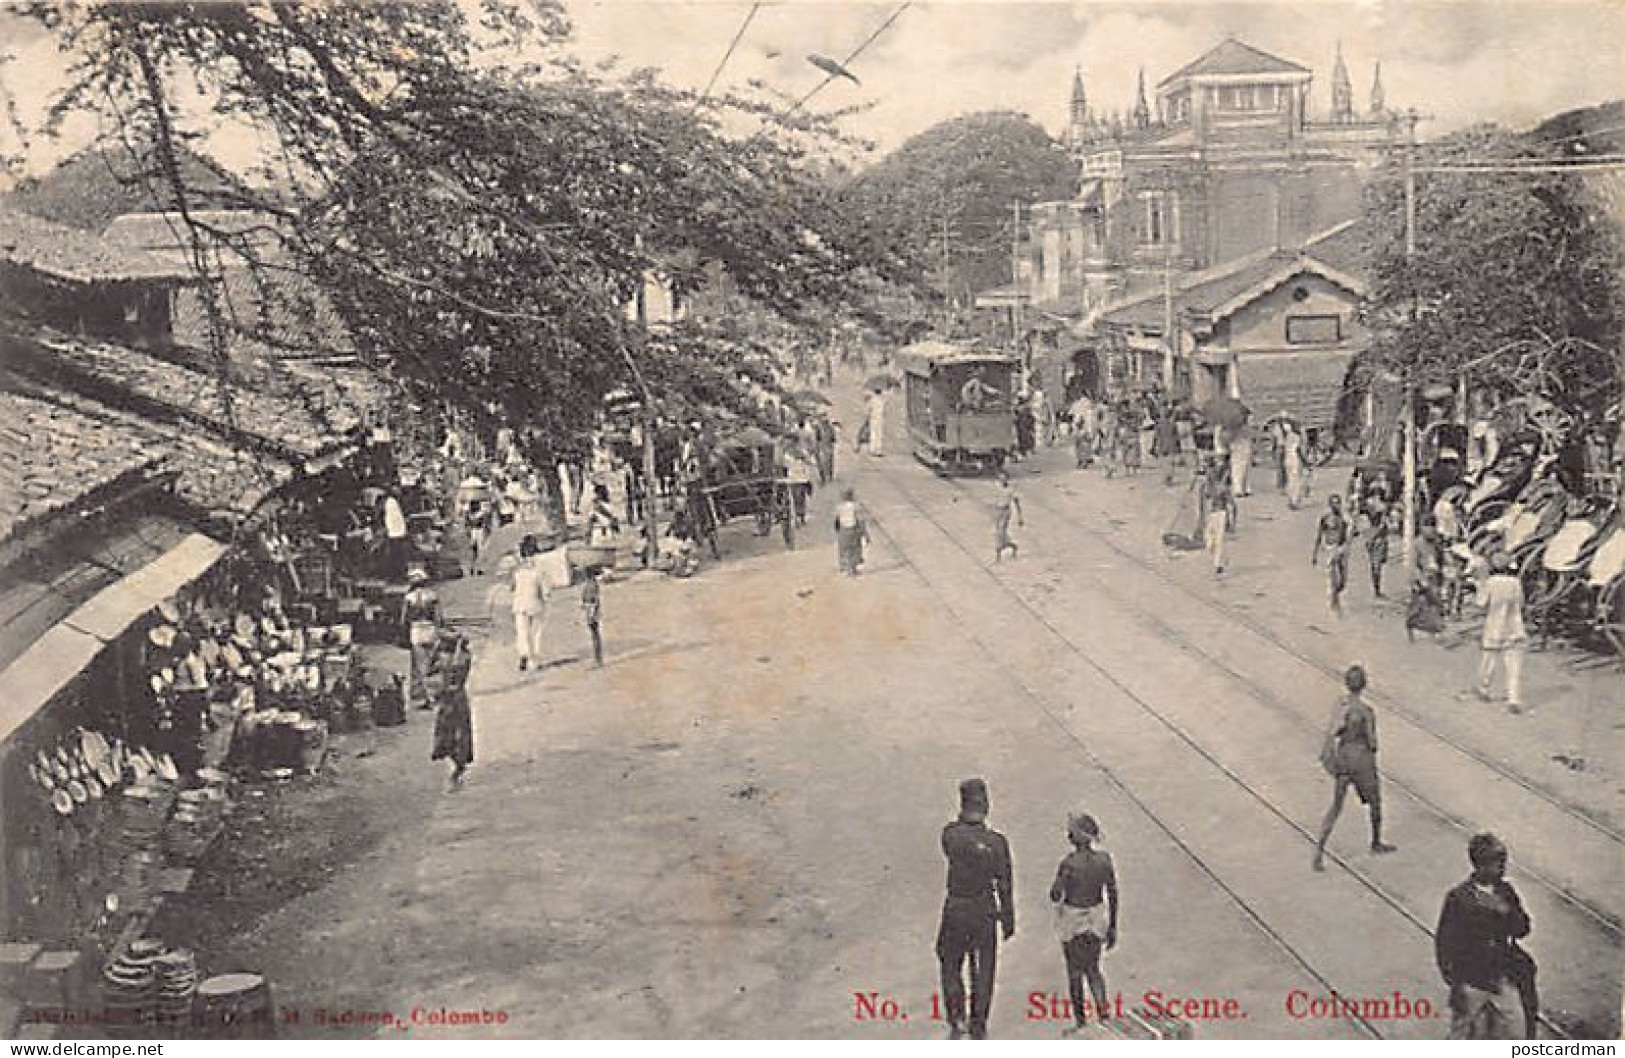 Sri Lanka - COLOMBO - Street Scene - Publ. S.D.H.M. Sadoon 161 - Sri Lanka (Ceylon)